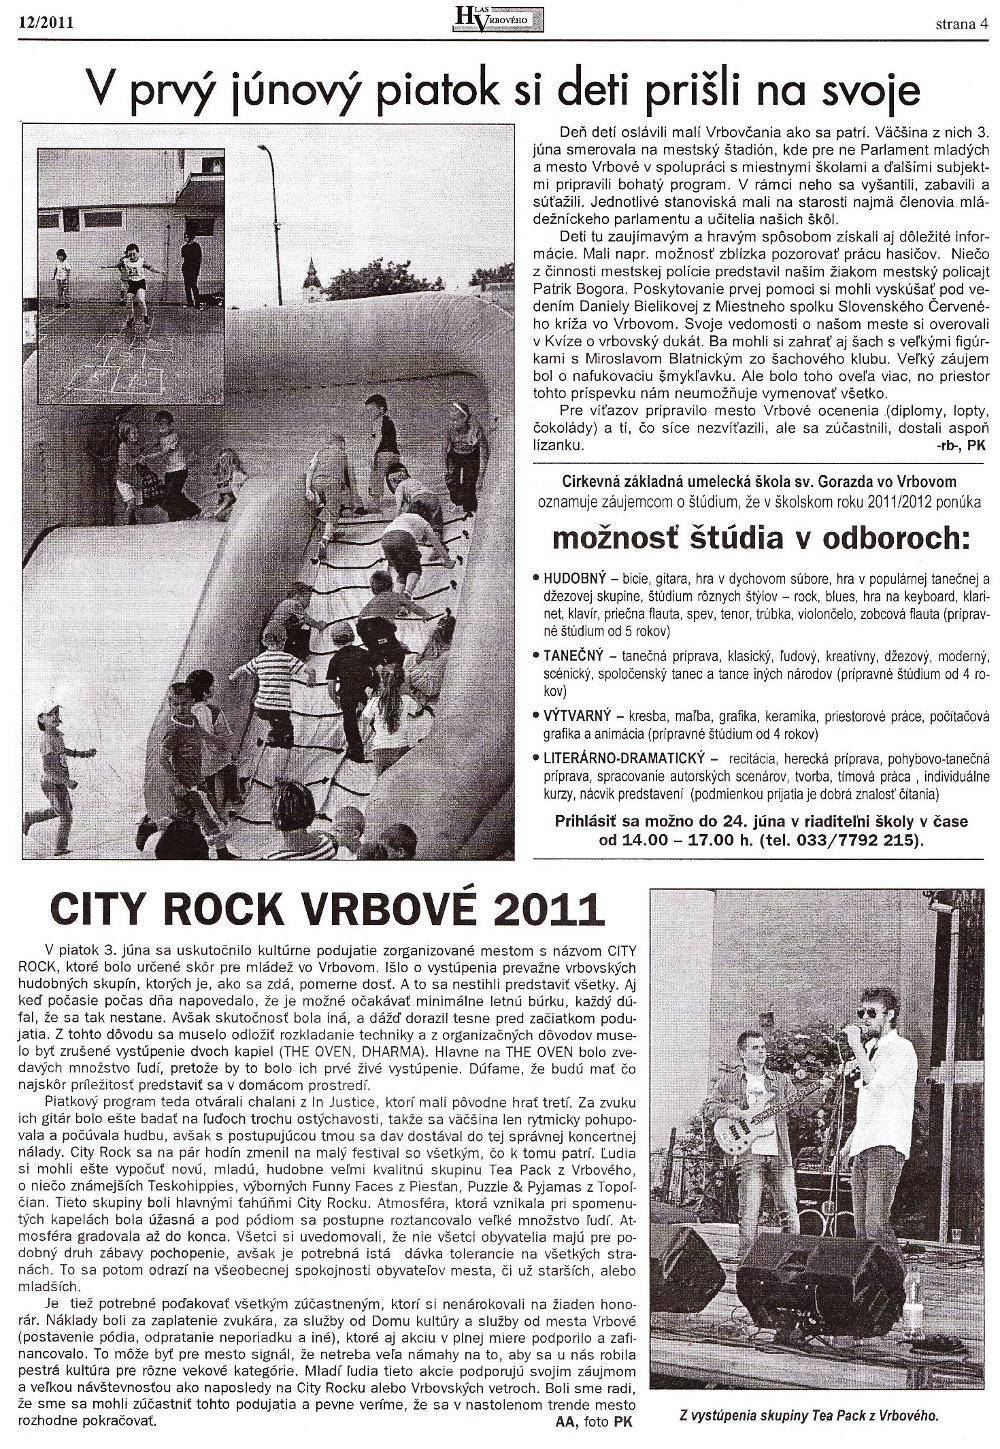 Hlas Vrbového 12/2011, strana 4